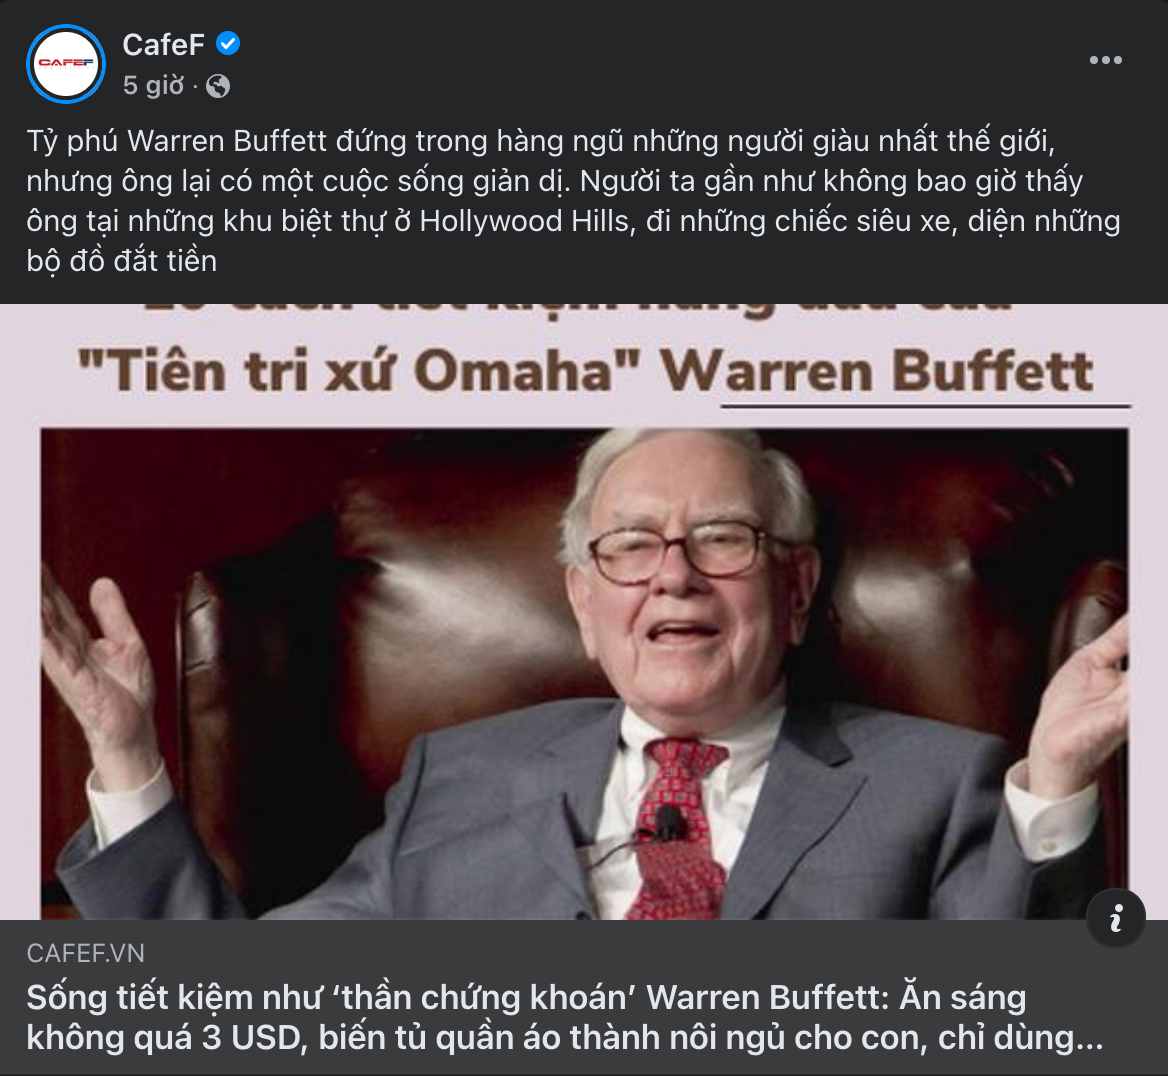 Điểm nóng MXH 14/04 - Cộng đồng Trader Việt Nam: Ngỡ ngàng, ngơ ngác và bật ngửa trước lối sống của tỷ phú Warren Buffett!